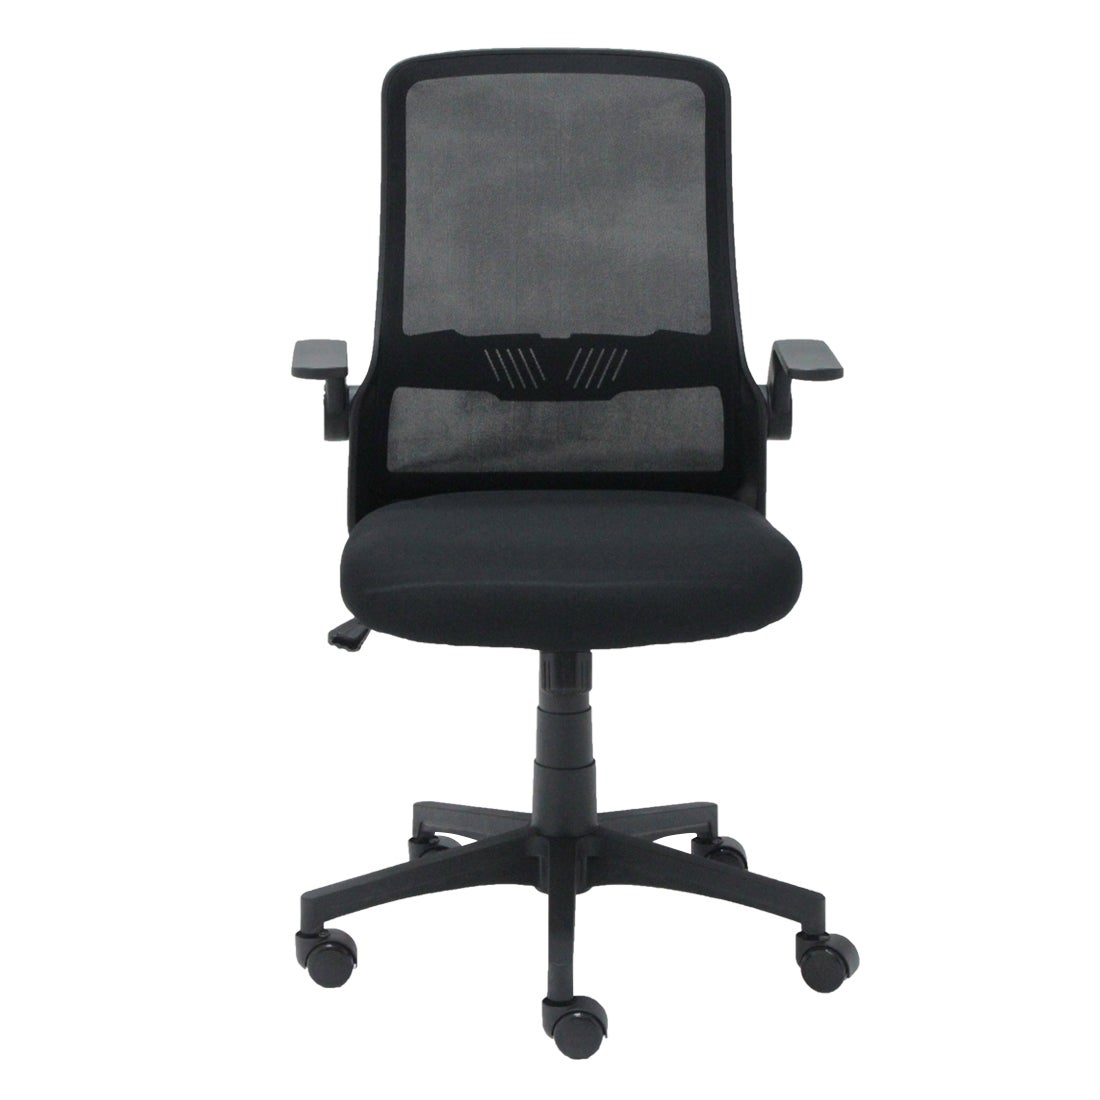 เก้าอี้สำนักงาน รุ่น Zcore สีดำ1